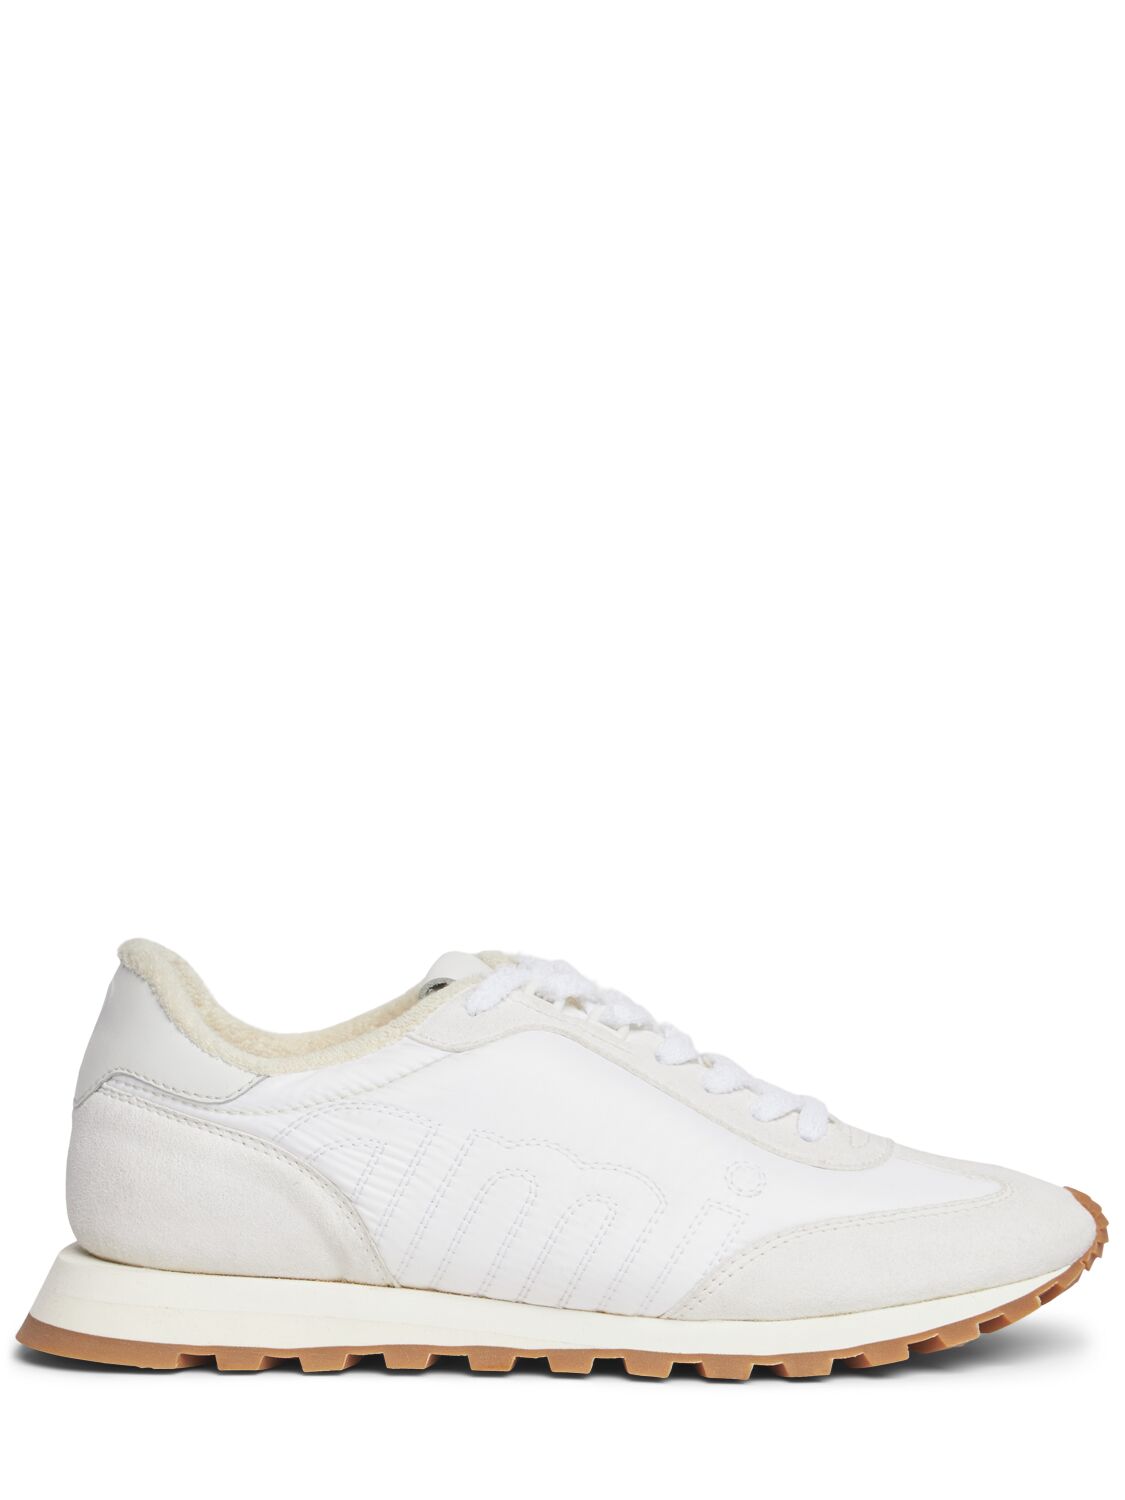 Ami Alexandre Mattiussi New Rush Sneakers In White